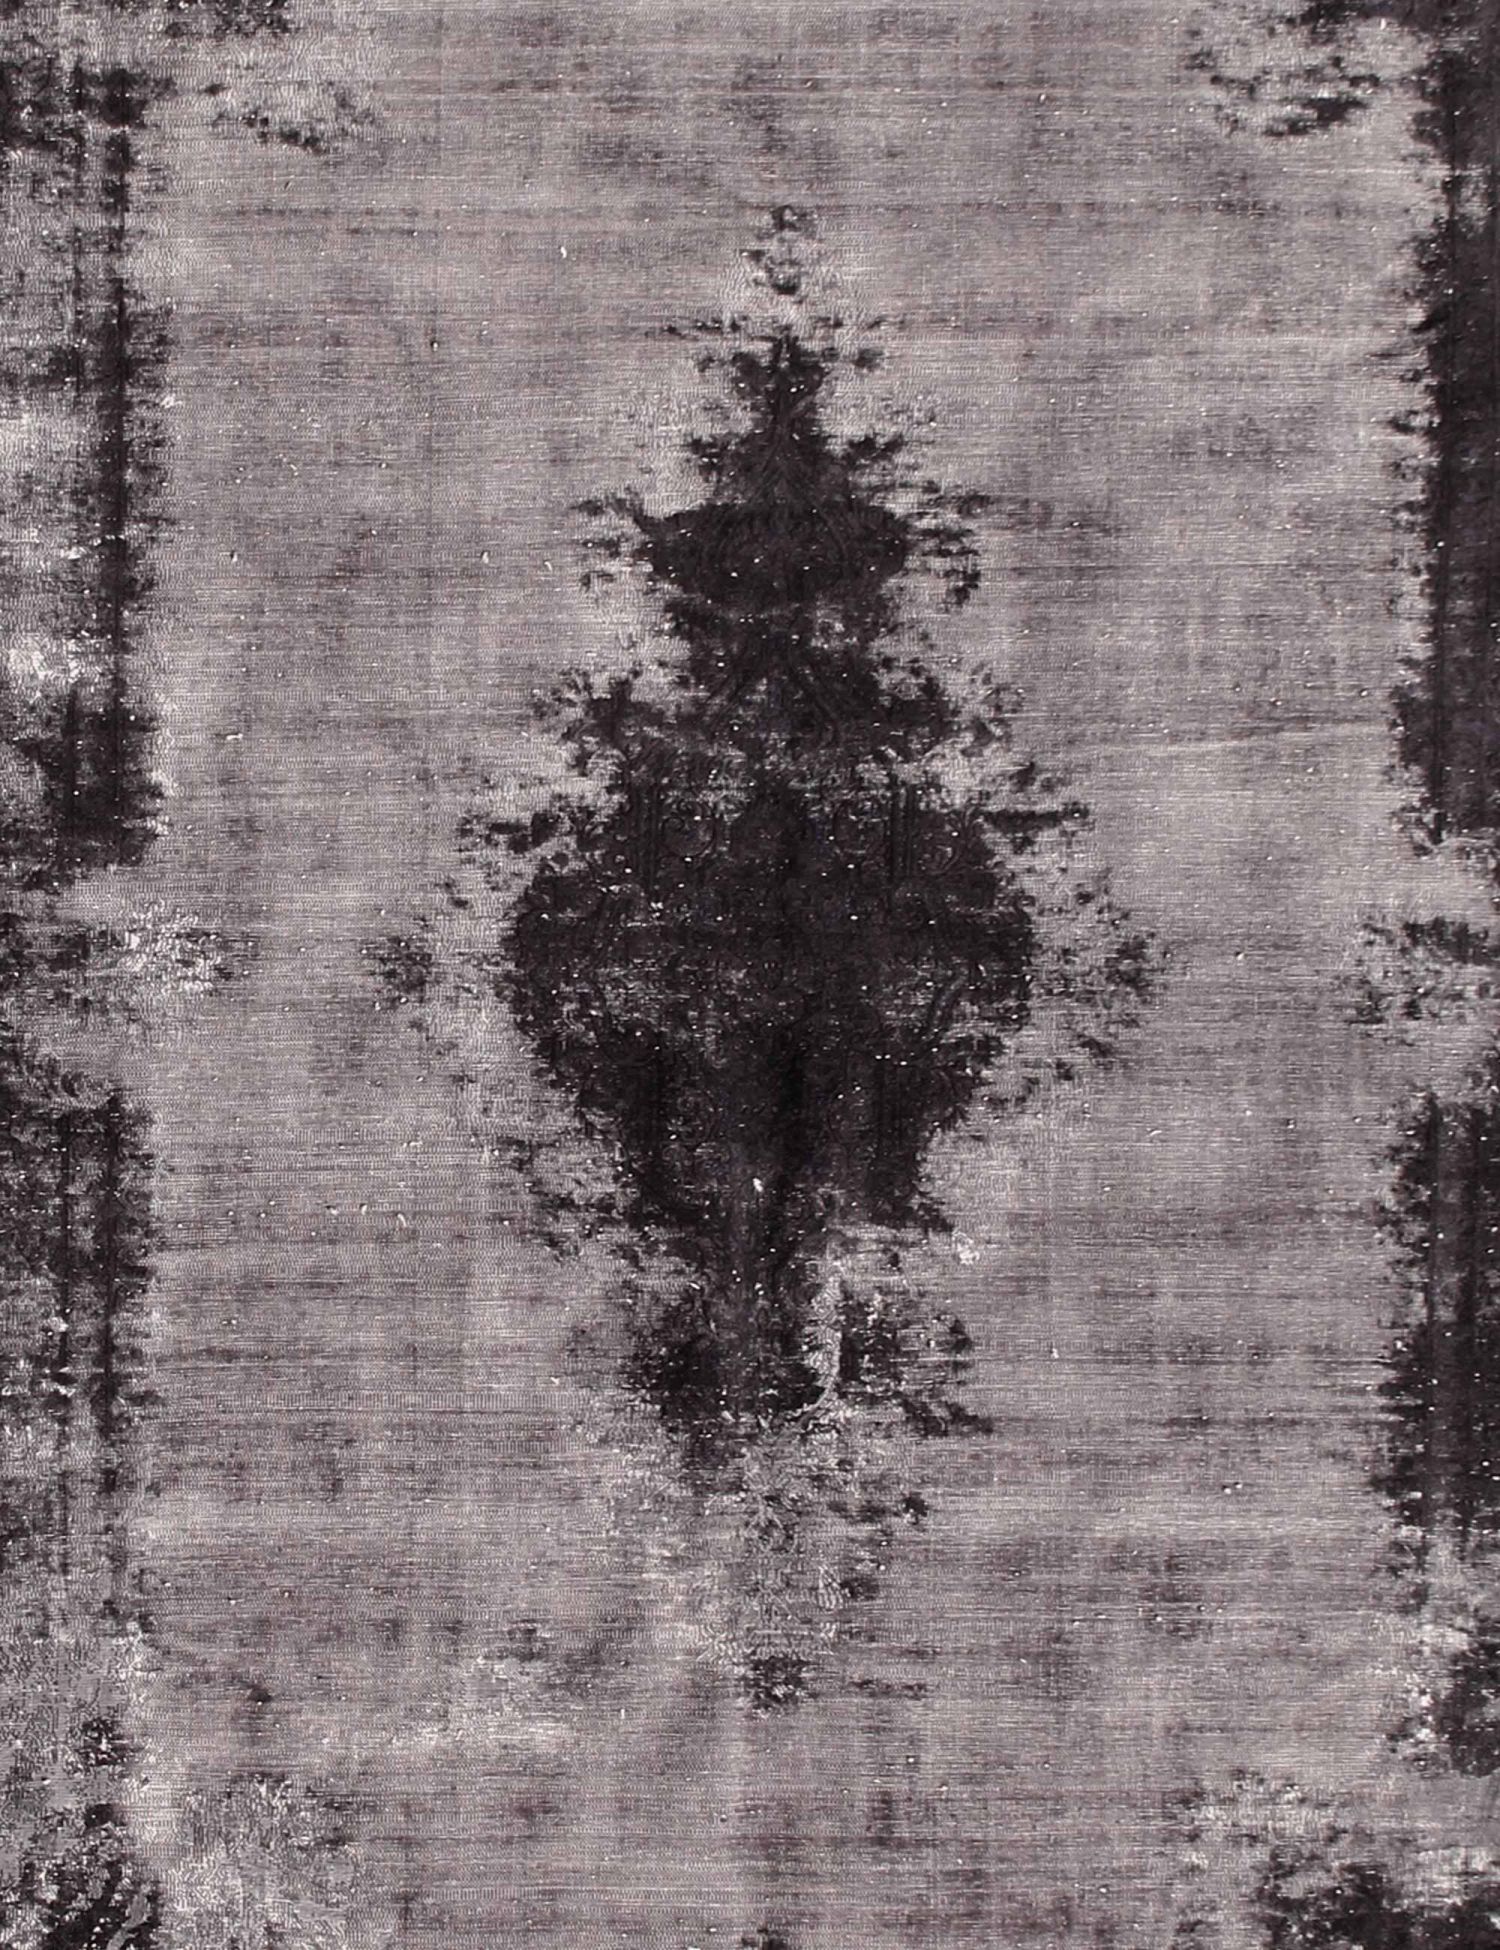 Persian Vintage Carpet  black <br/>392 x 200 cm